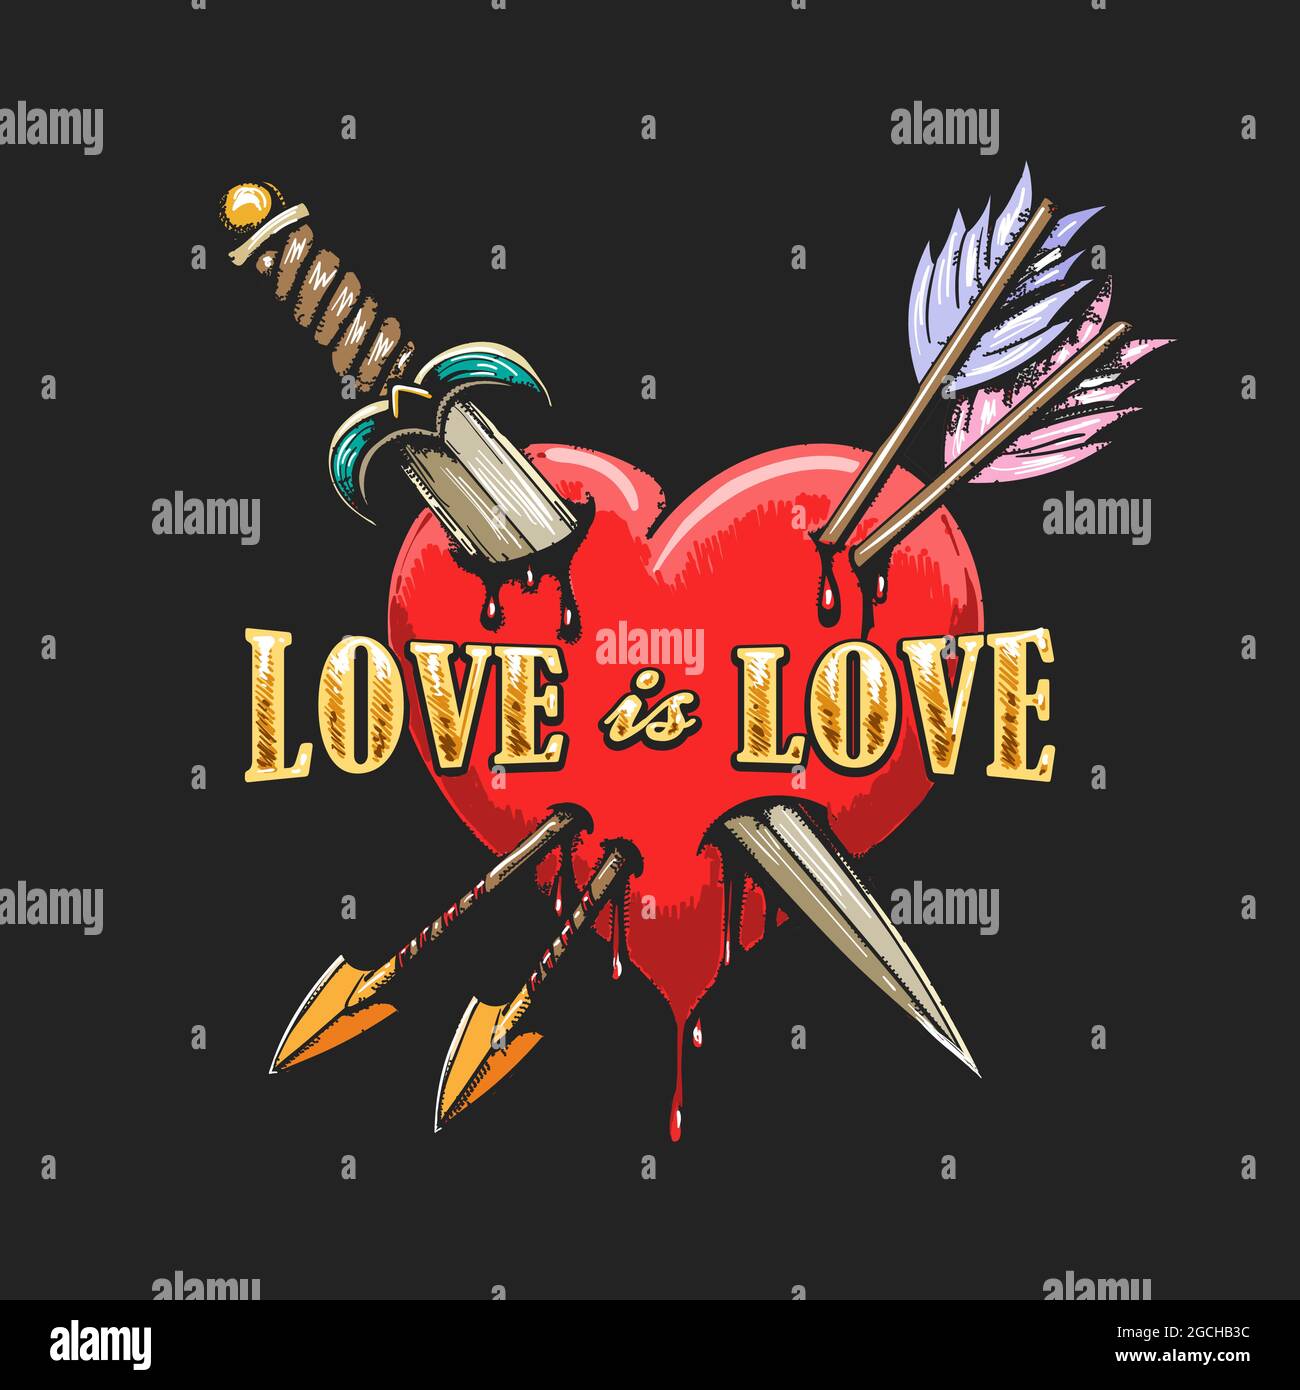 Tattoo of Heart durchbohrt von Dolch und Pfeilen und Aufschrift Liebe ist Liebe auf schwarzem Hintergrund. Vektorgrafik. Stock Vektor